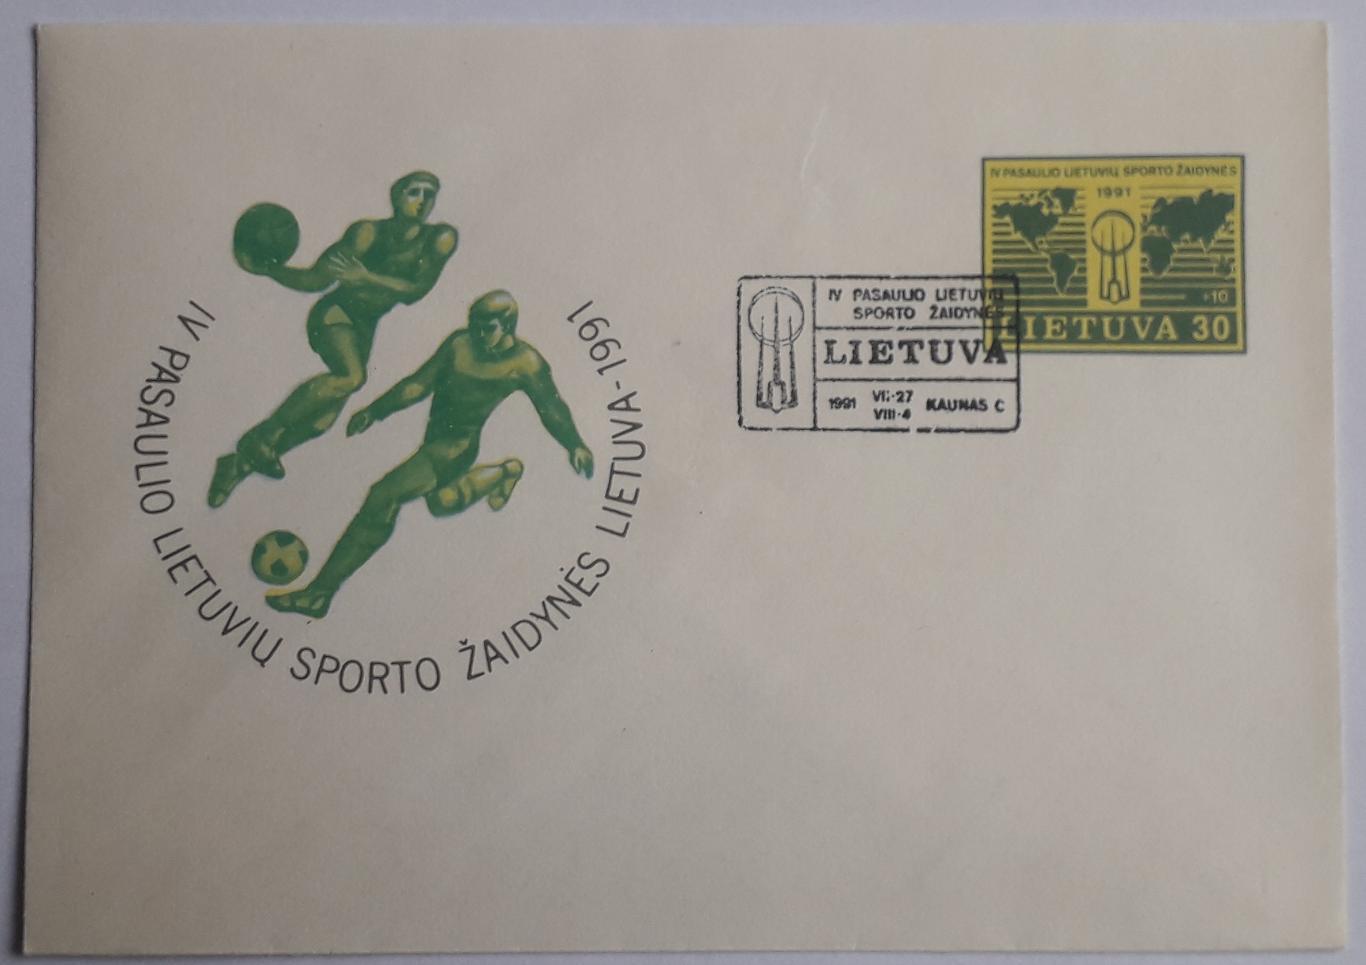 Конверт Литовские спортивные игры Литвы 1991 год